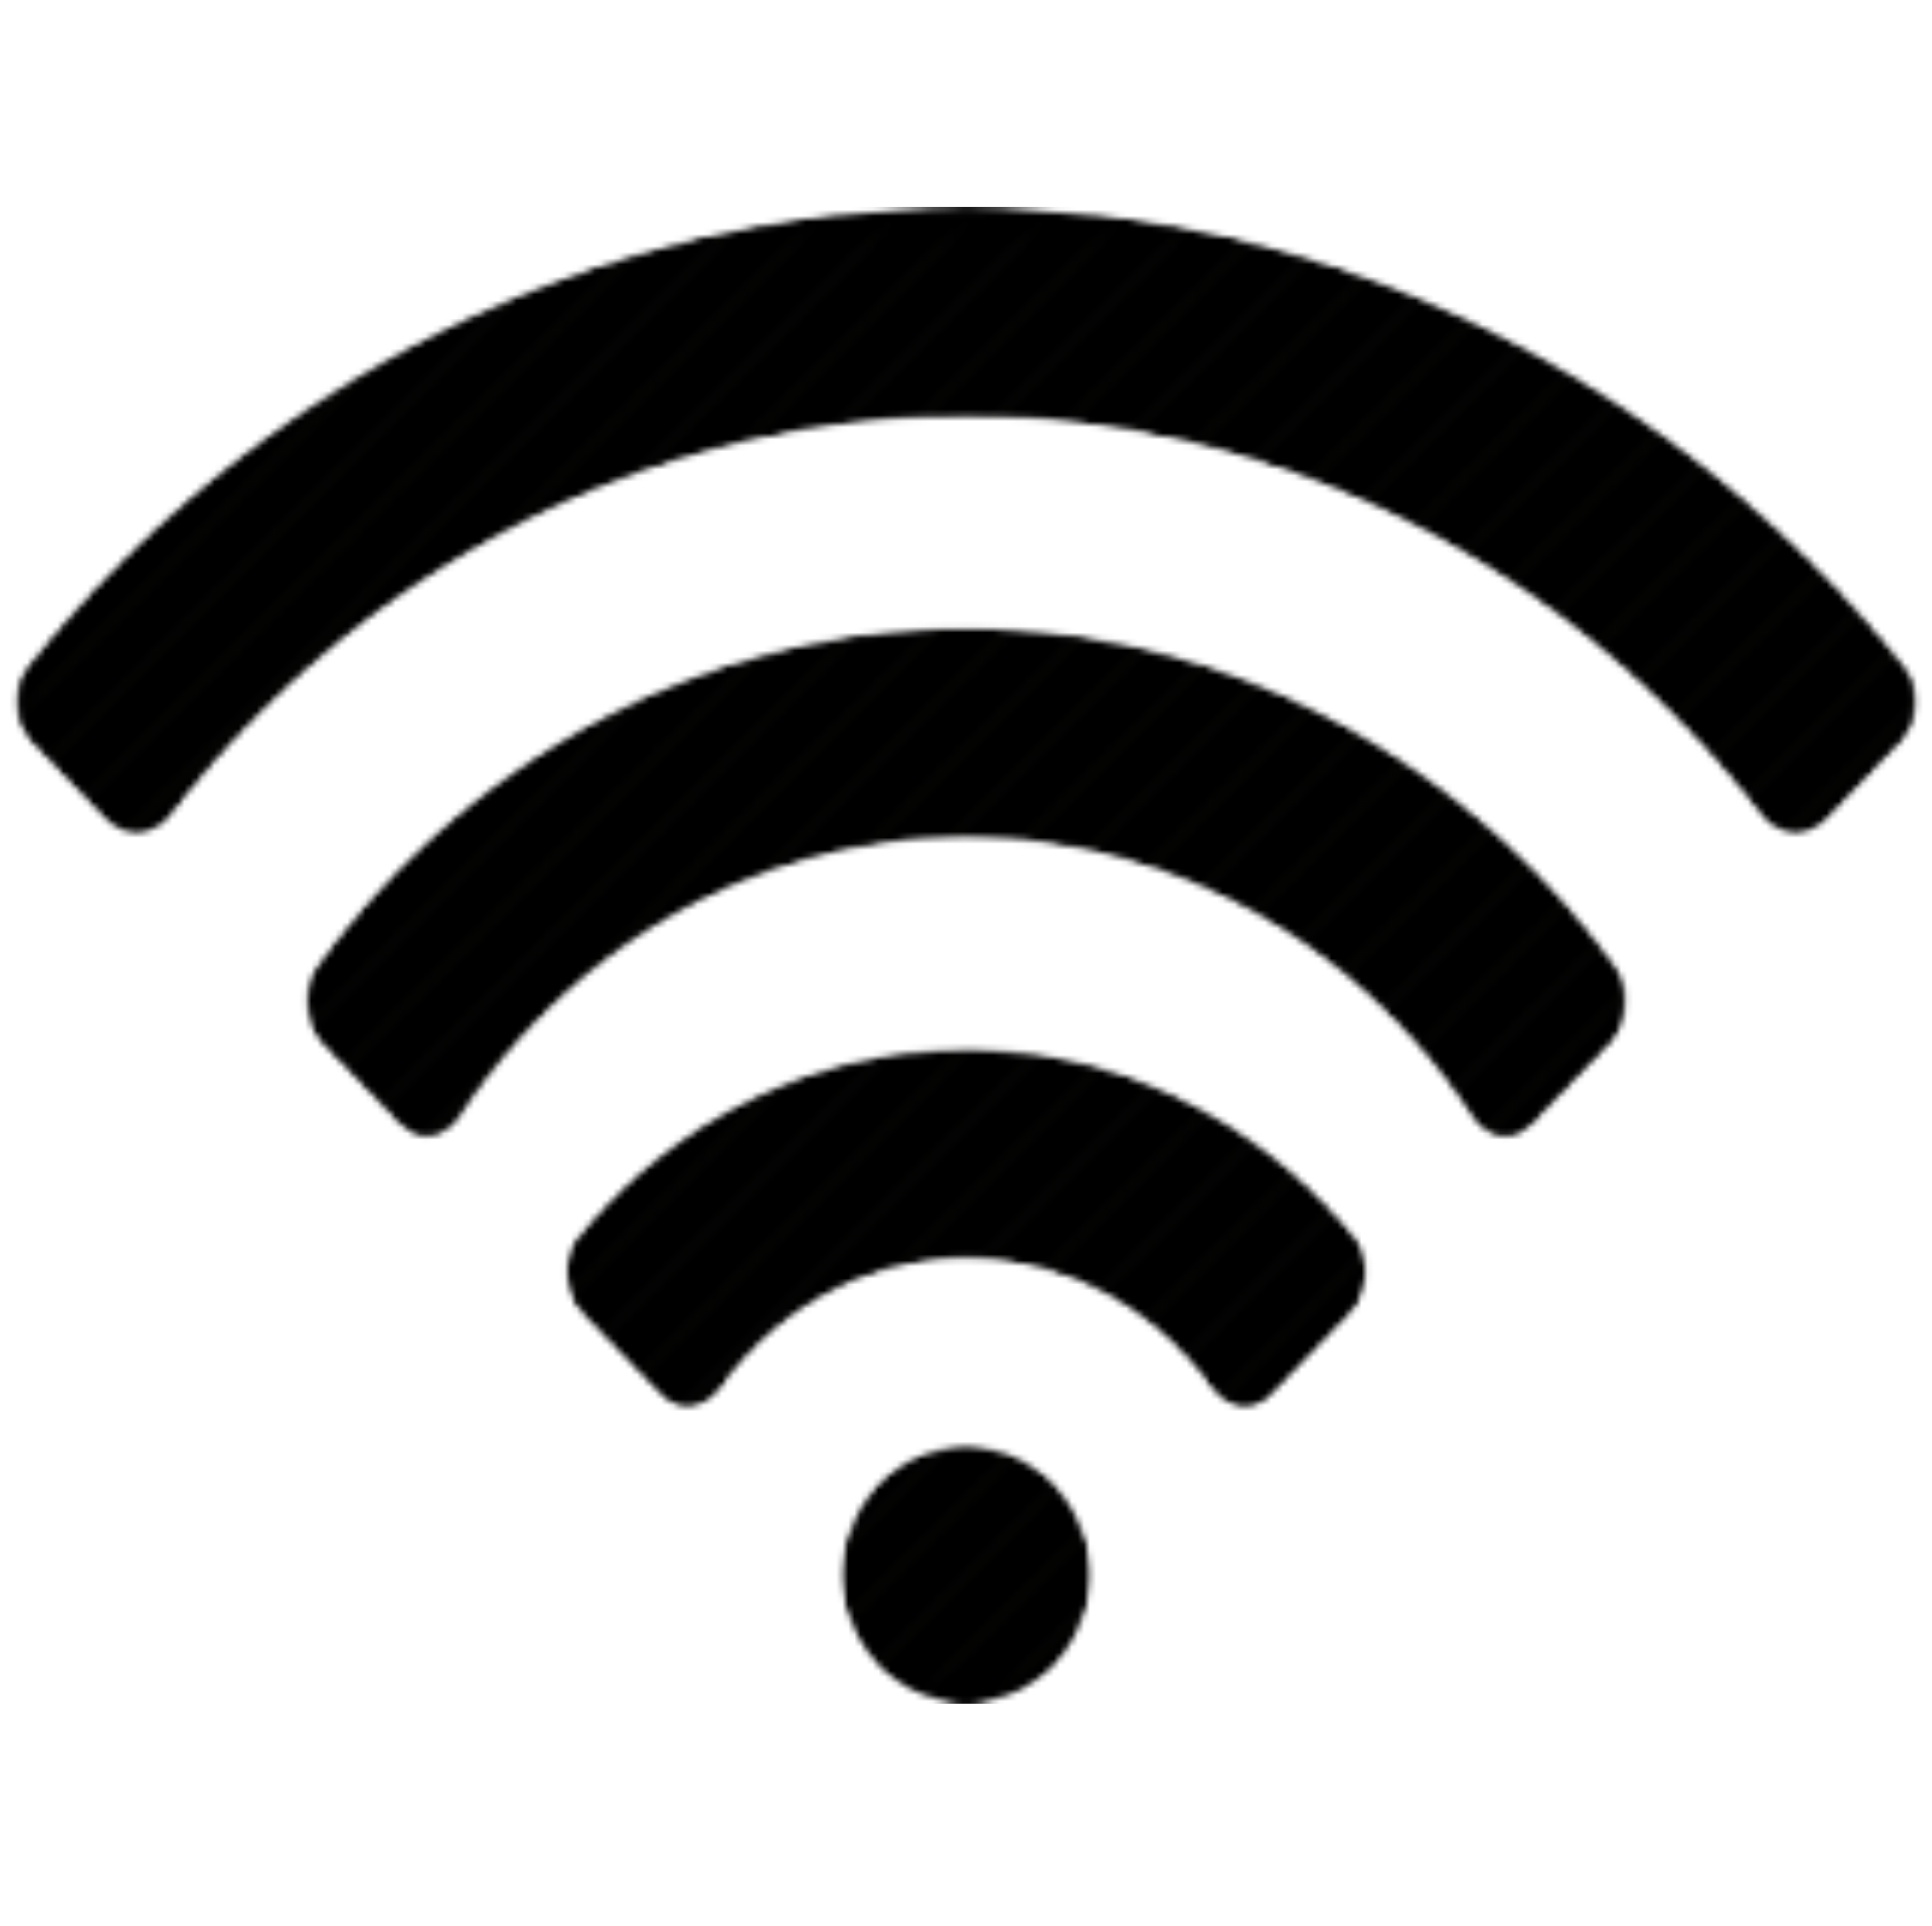 wi-fi, wireless internet
